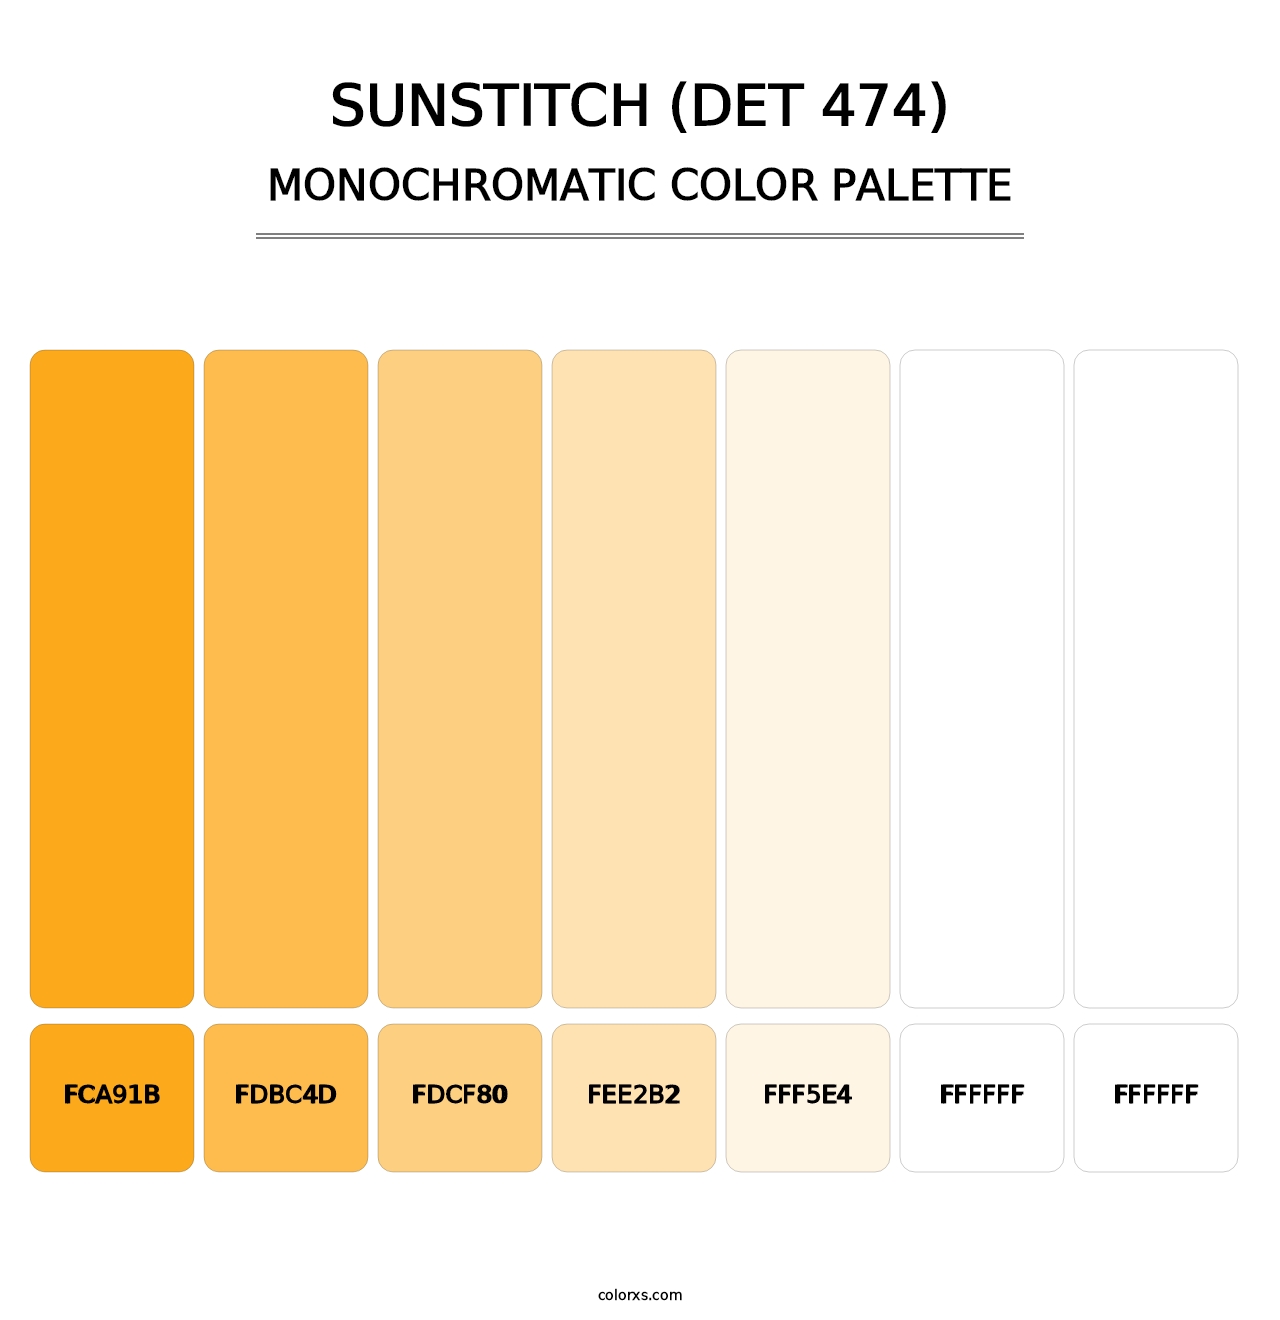 Sunstitch (DET 474) - Monochromatic Color Palette